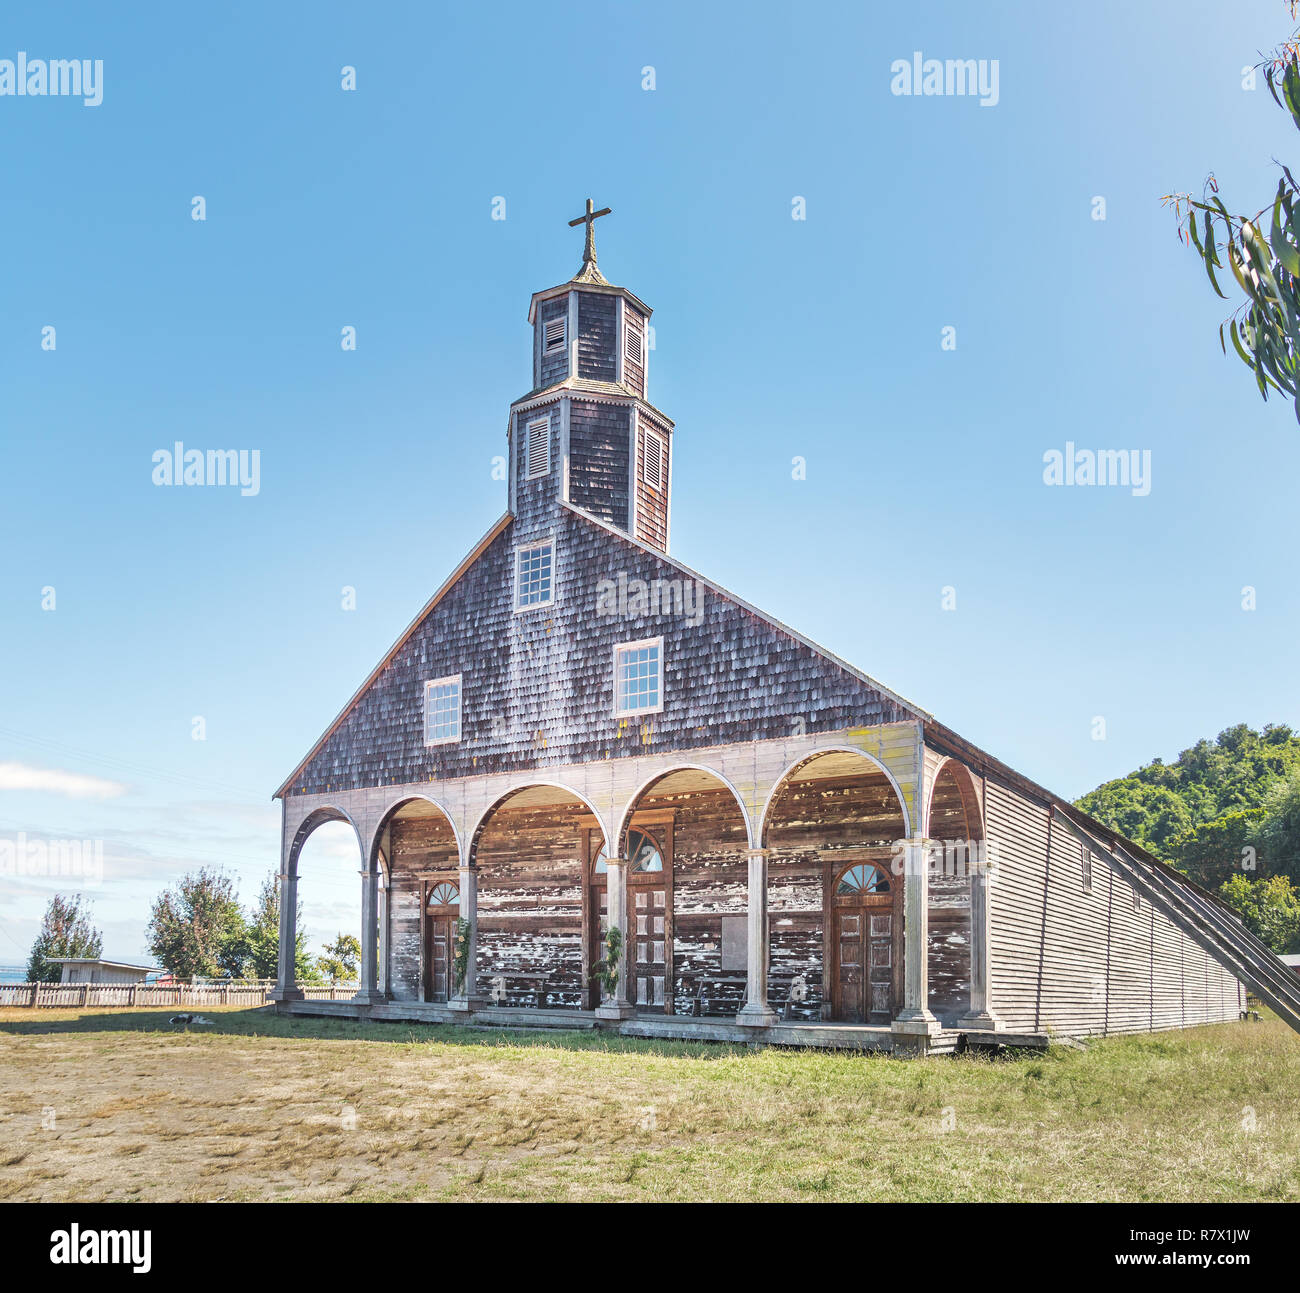 Quinchao Church - Chiloe Island, Chile Stock Photo